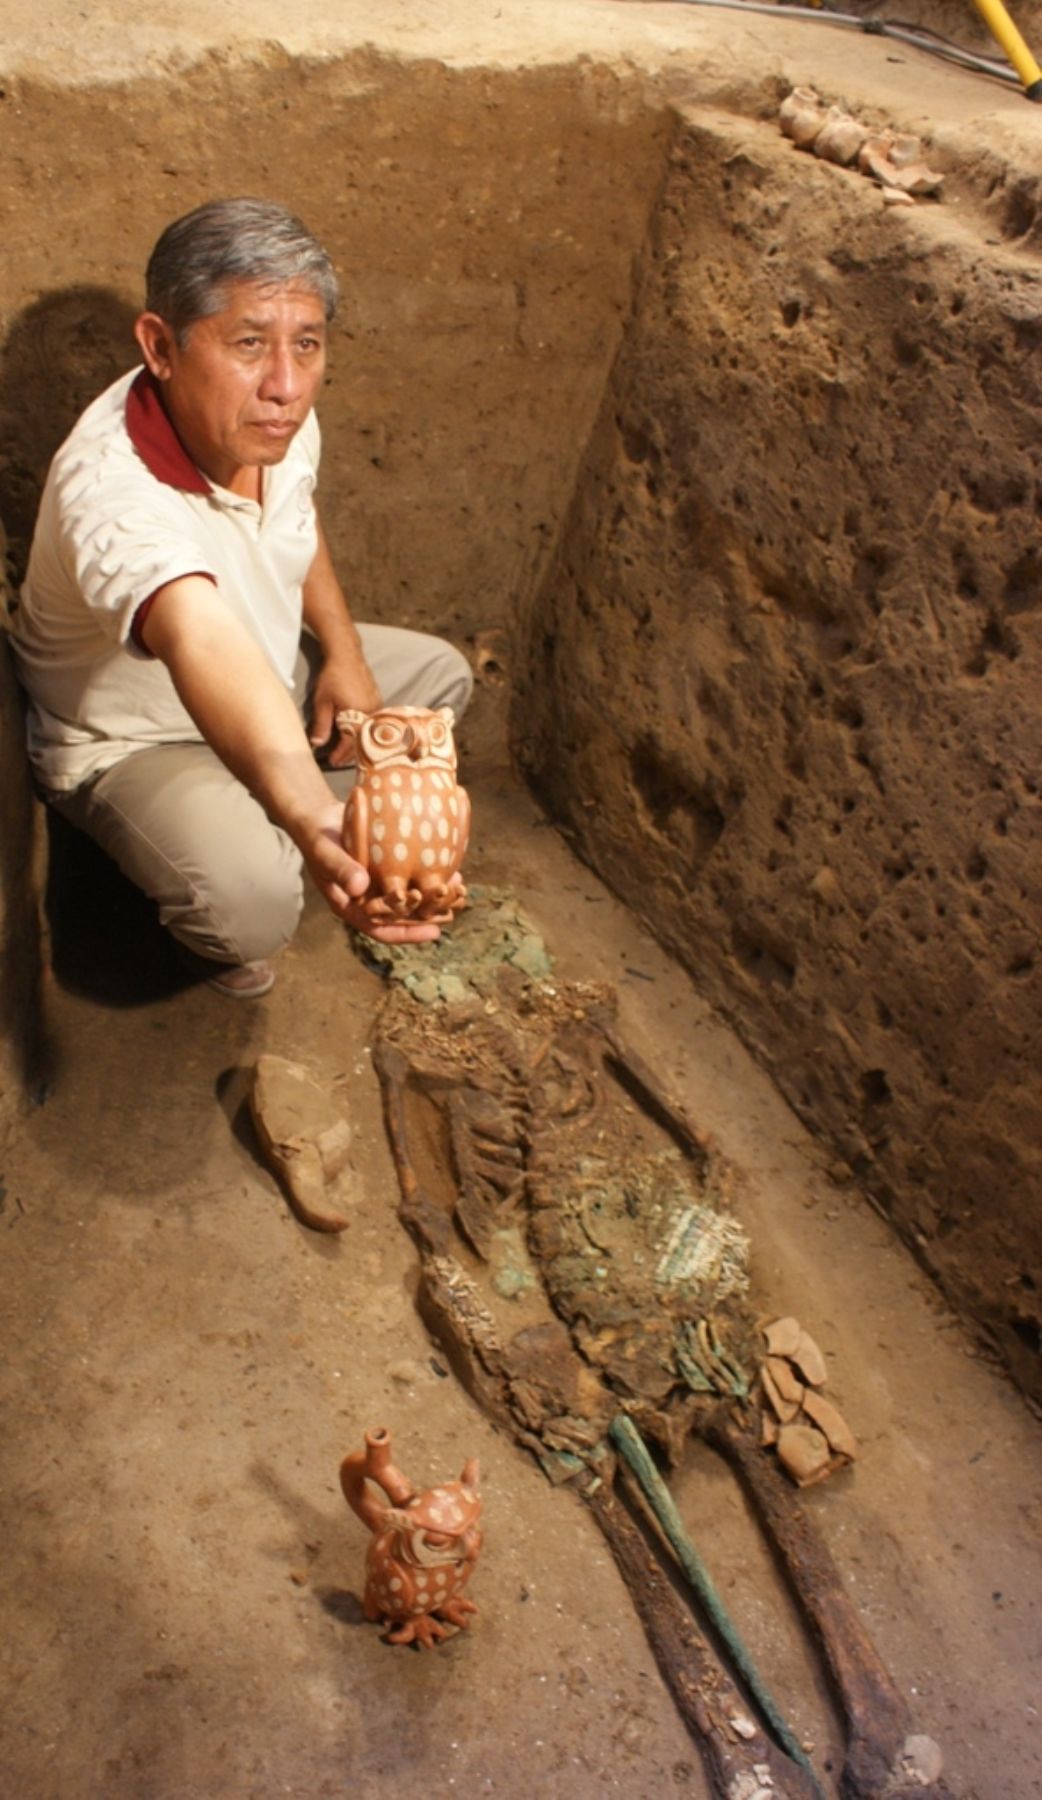 Arqueólogo Luis Chero muestra cerámica en forma de búho encontrada junto a joven noble en el complejo arqueológico de Huaca Rajada-Sipán. Foto: ANDINA/Silvia Depaz.